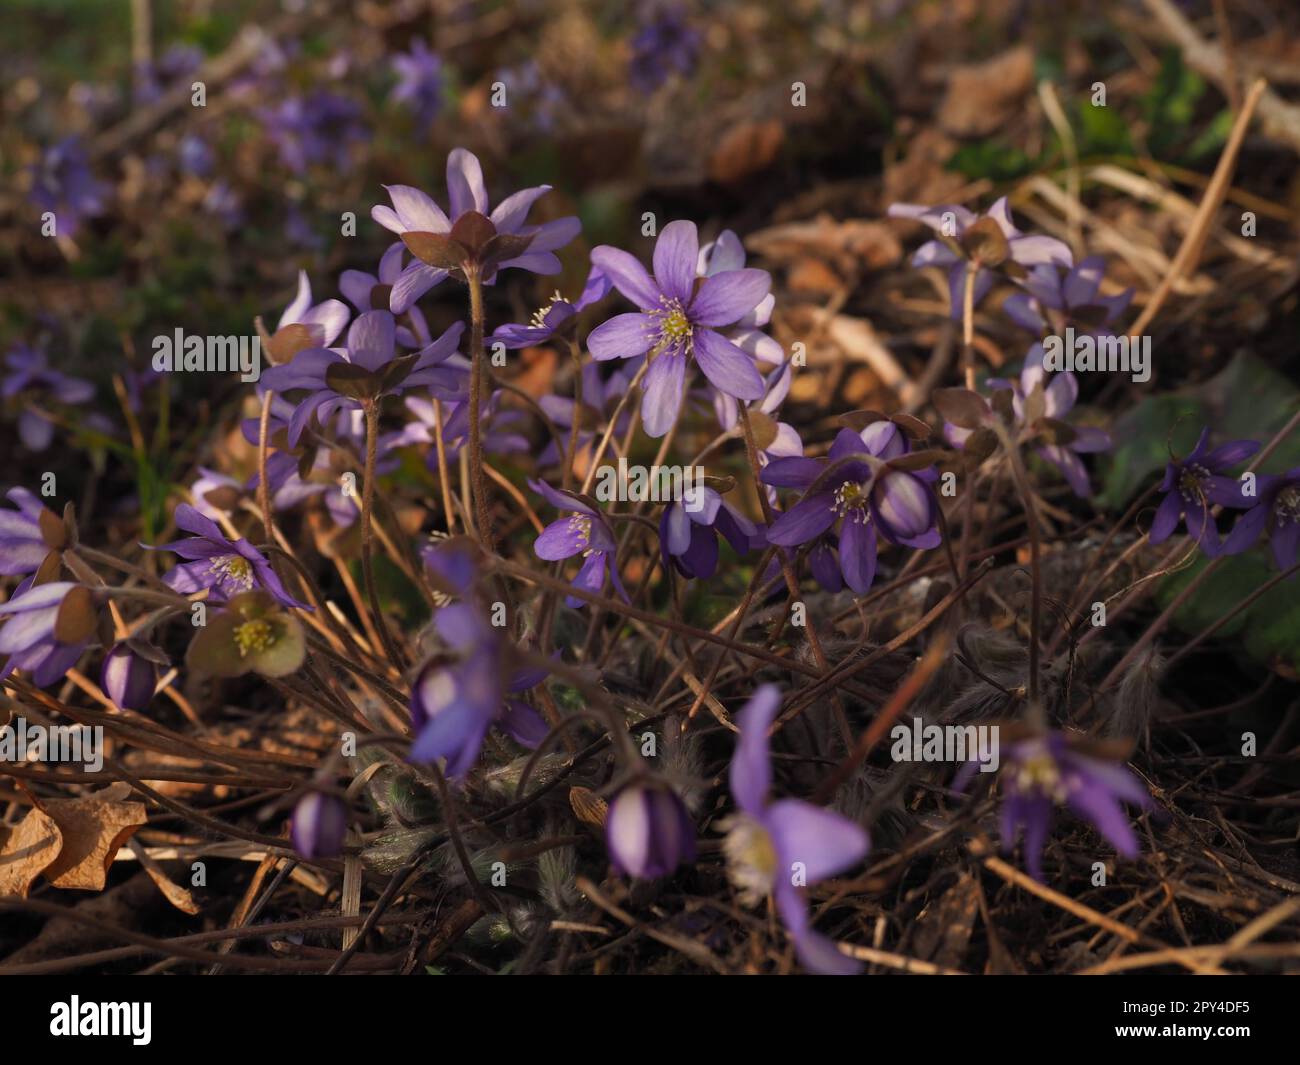 Numerous flowers of Hepatica Stock Photo